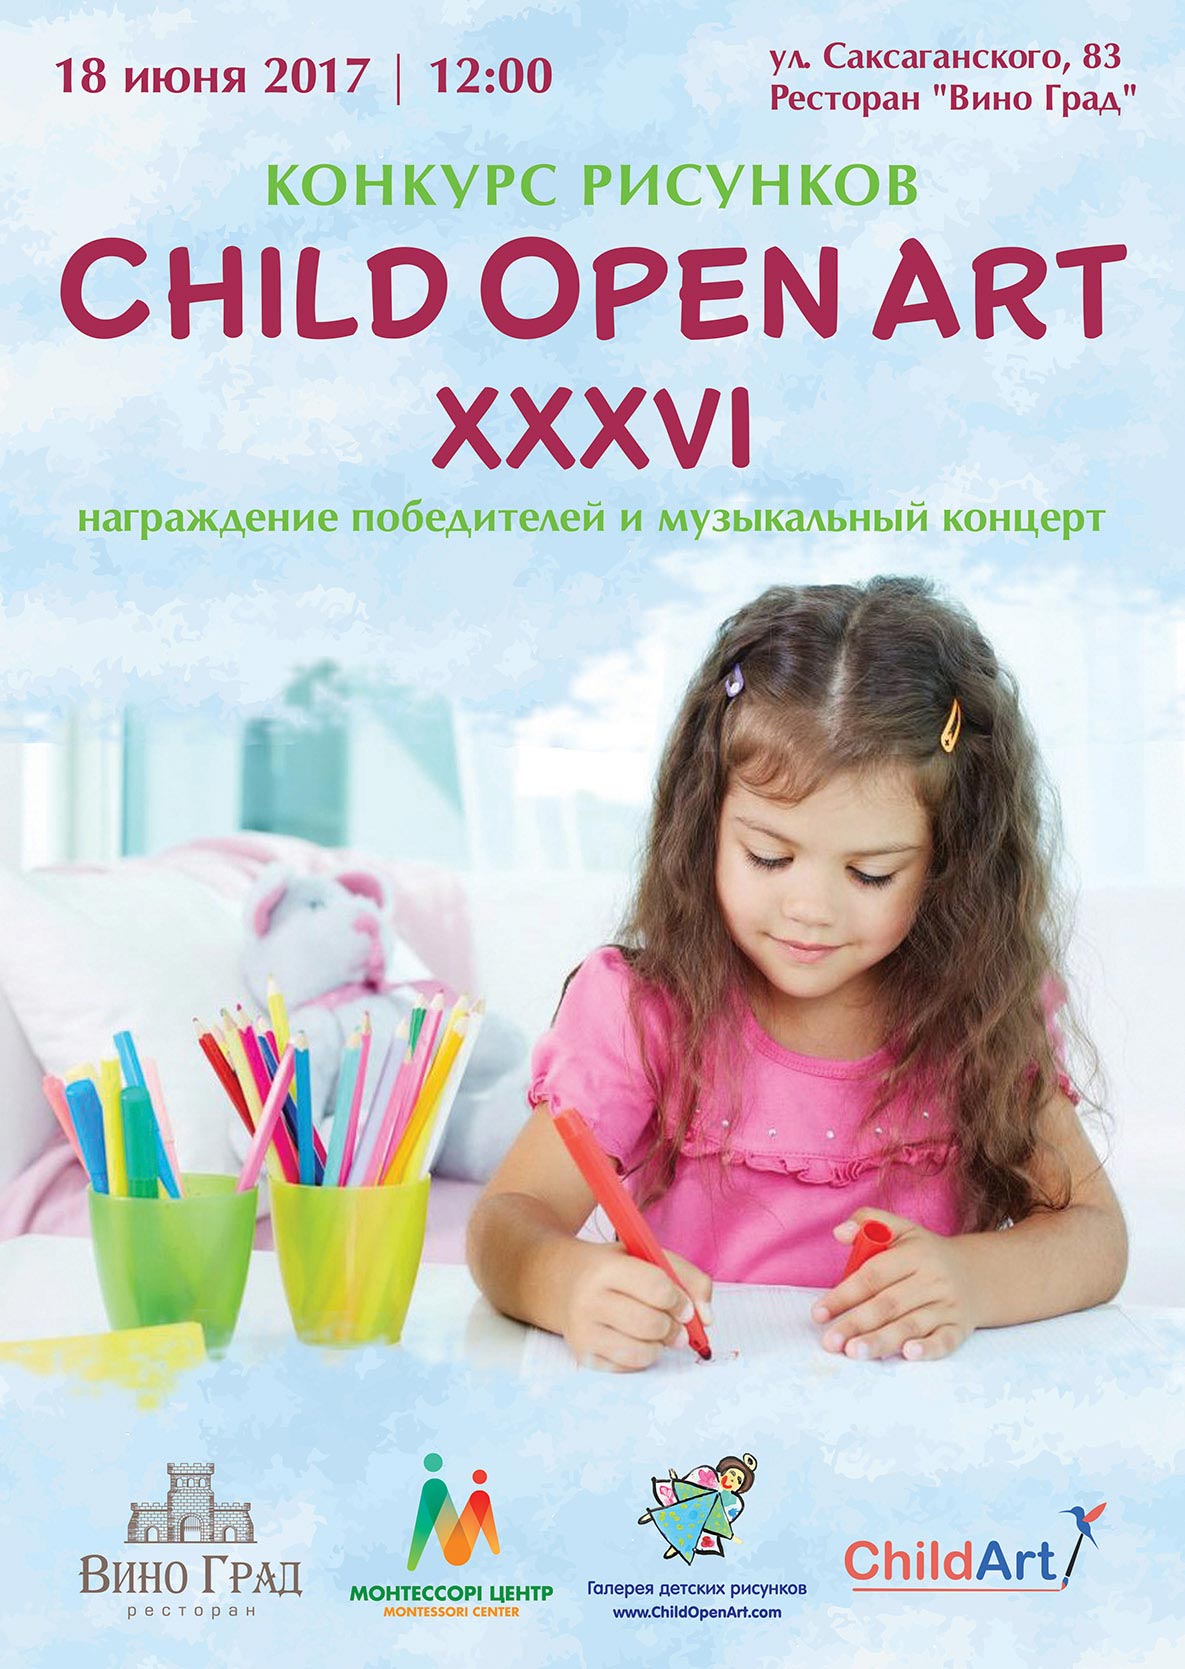 Конкурс рисунков ChildOpenArt 36